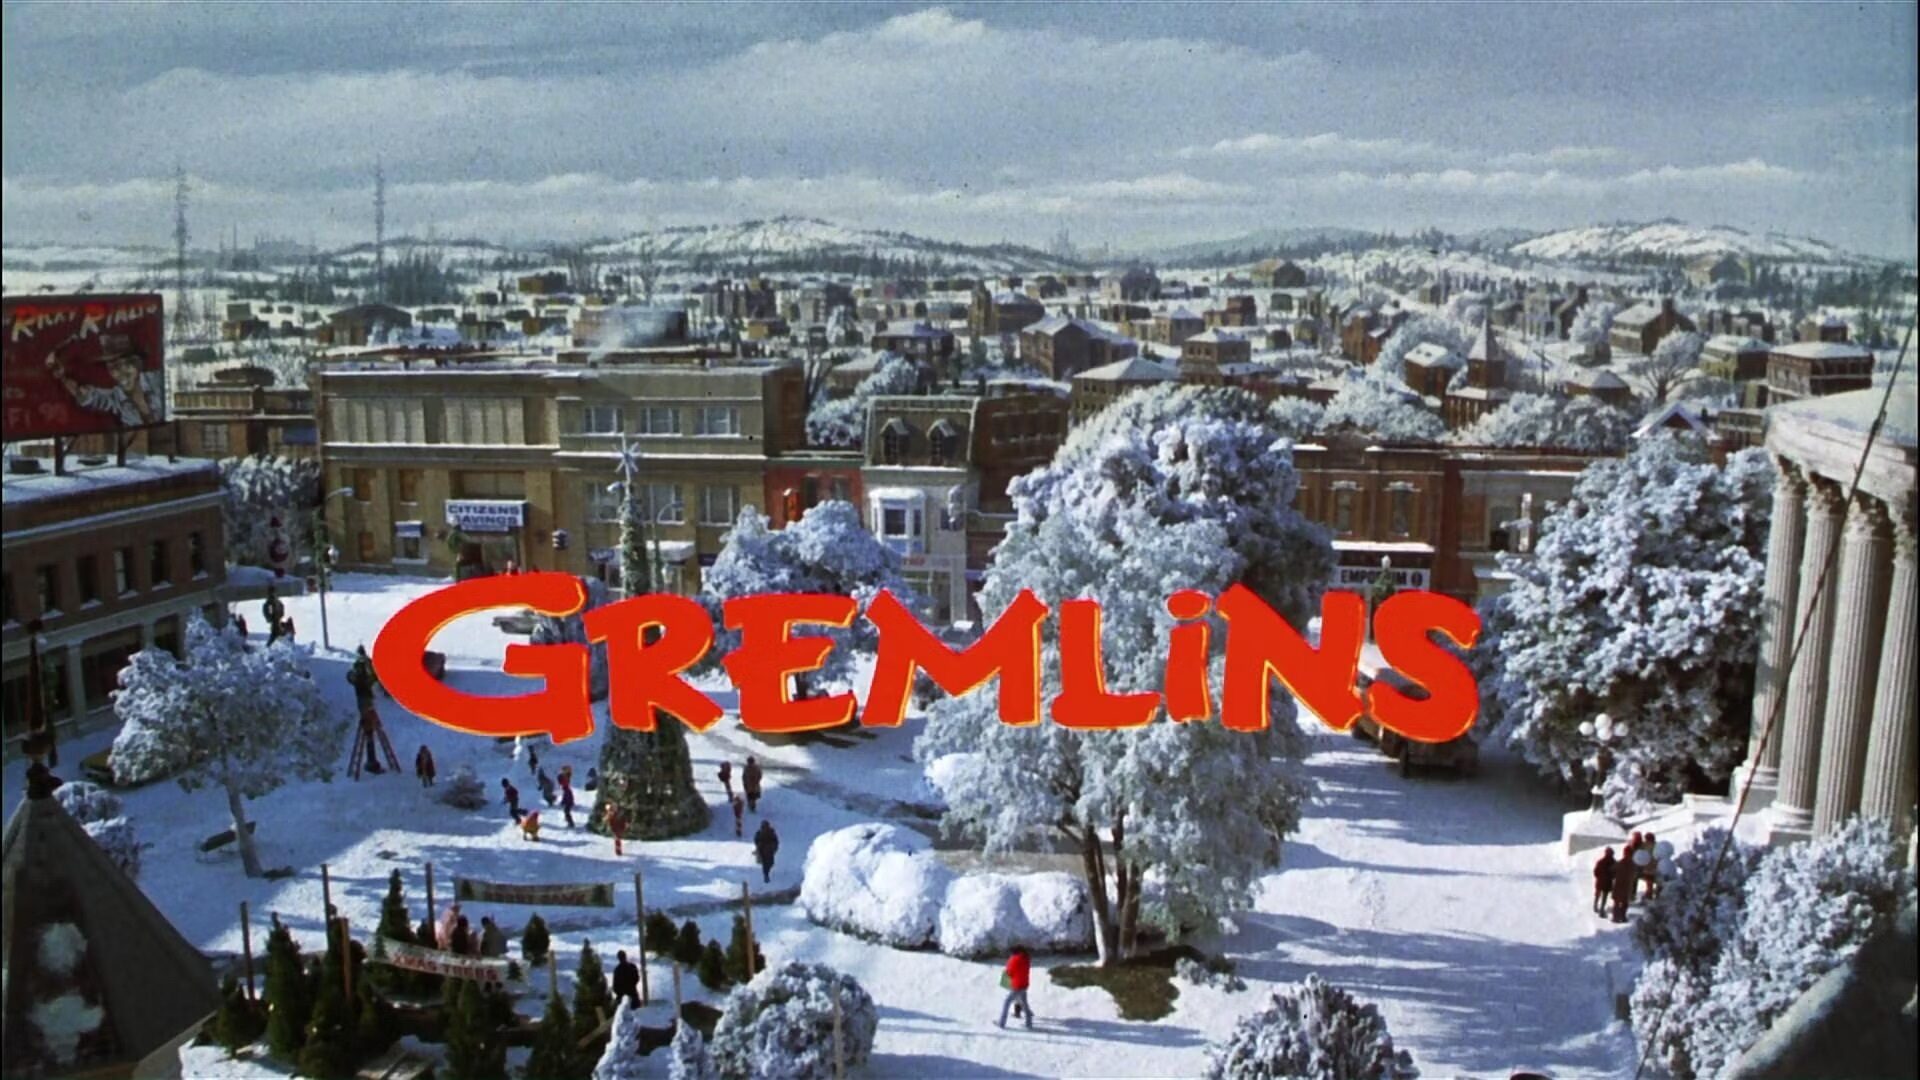 Gremlins Logo